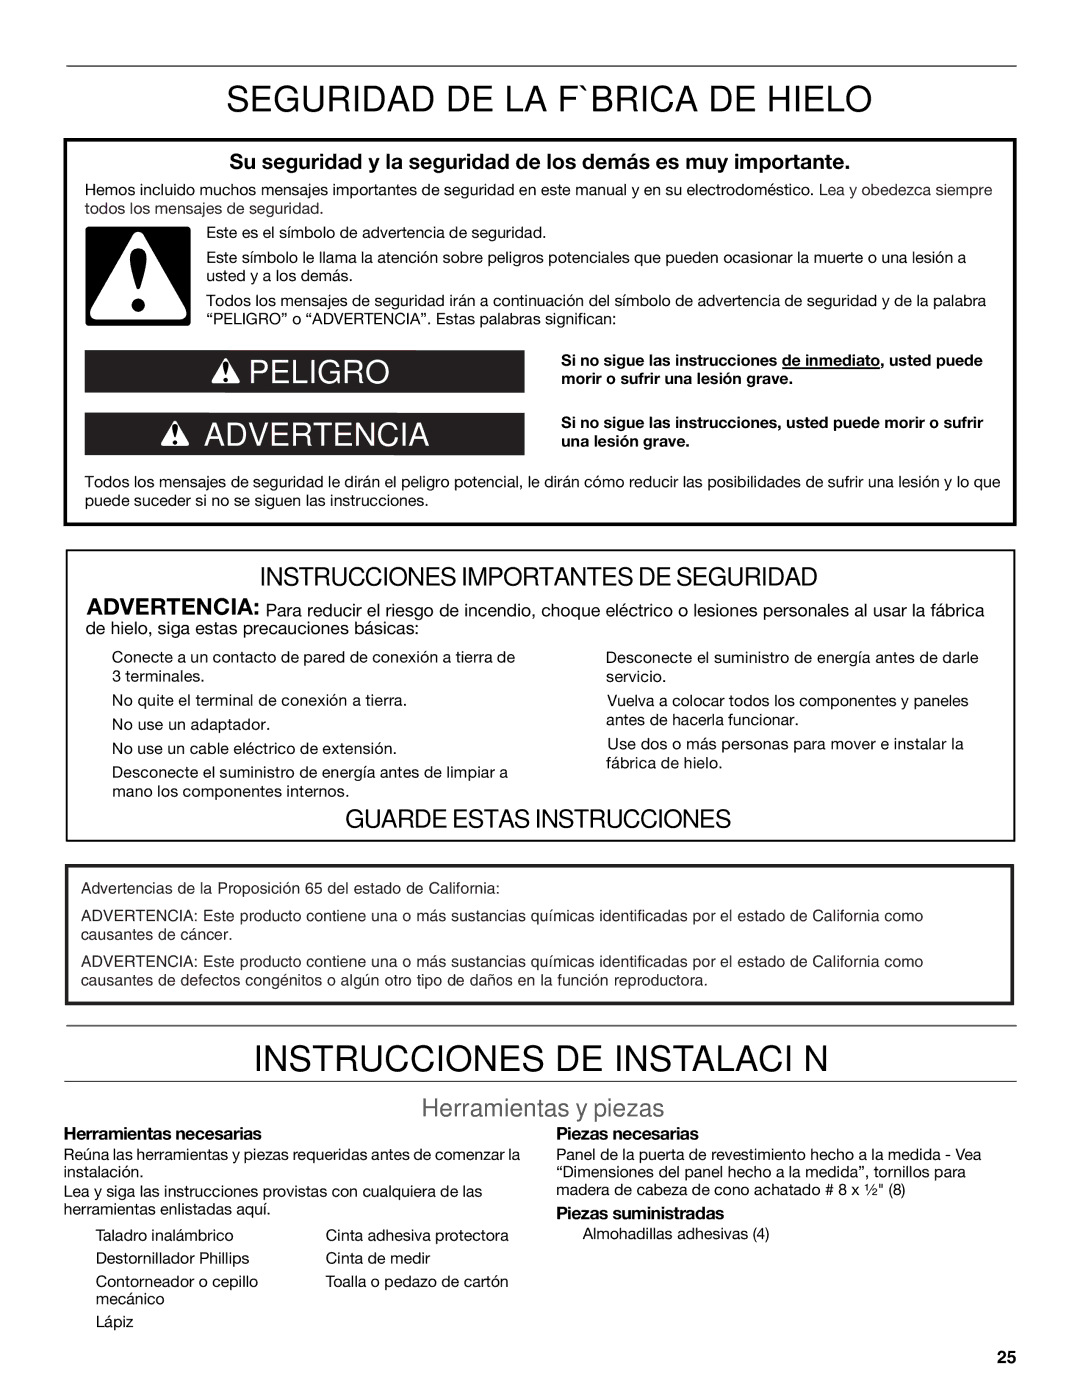 KitchenAid W10520792B manual Seguridad DE LA Fábrica DE Hielo, Instrucciones DE Instalación, Herramientas y piezas 